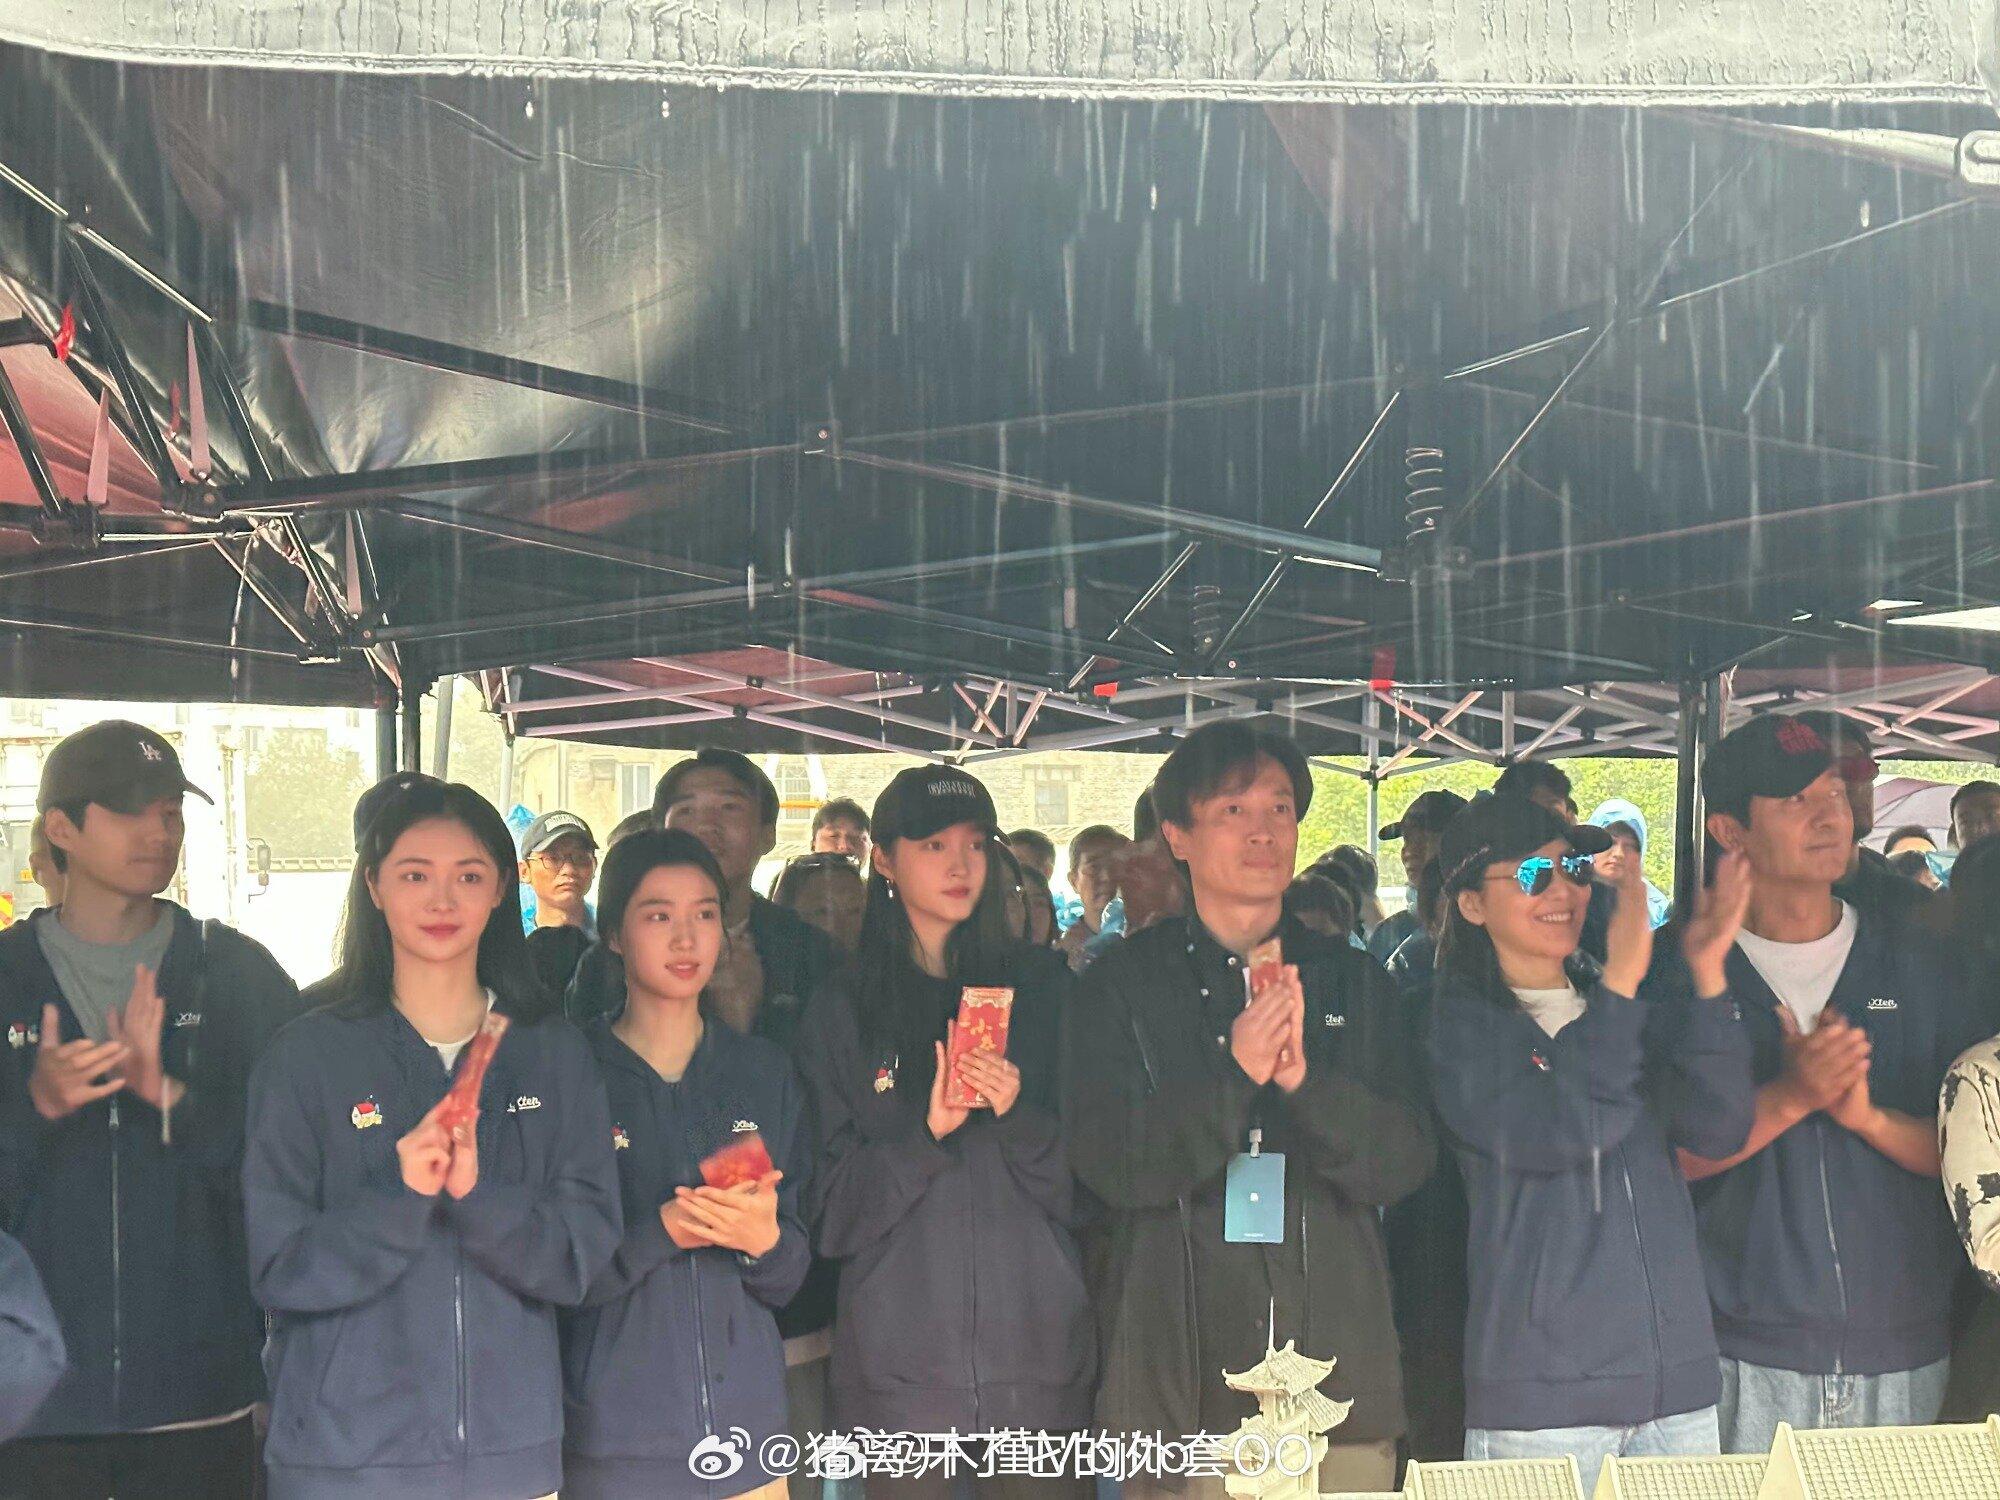 Đoàn phim Tiểu Hạng Nhân Gia khai máy ngày 11/10/2023 trong thời tiết mưa gió (Nguồn: internet)